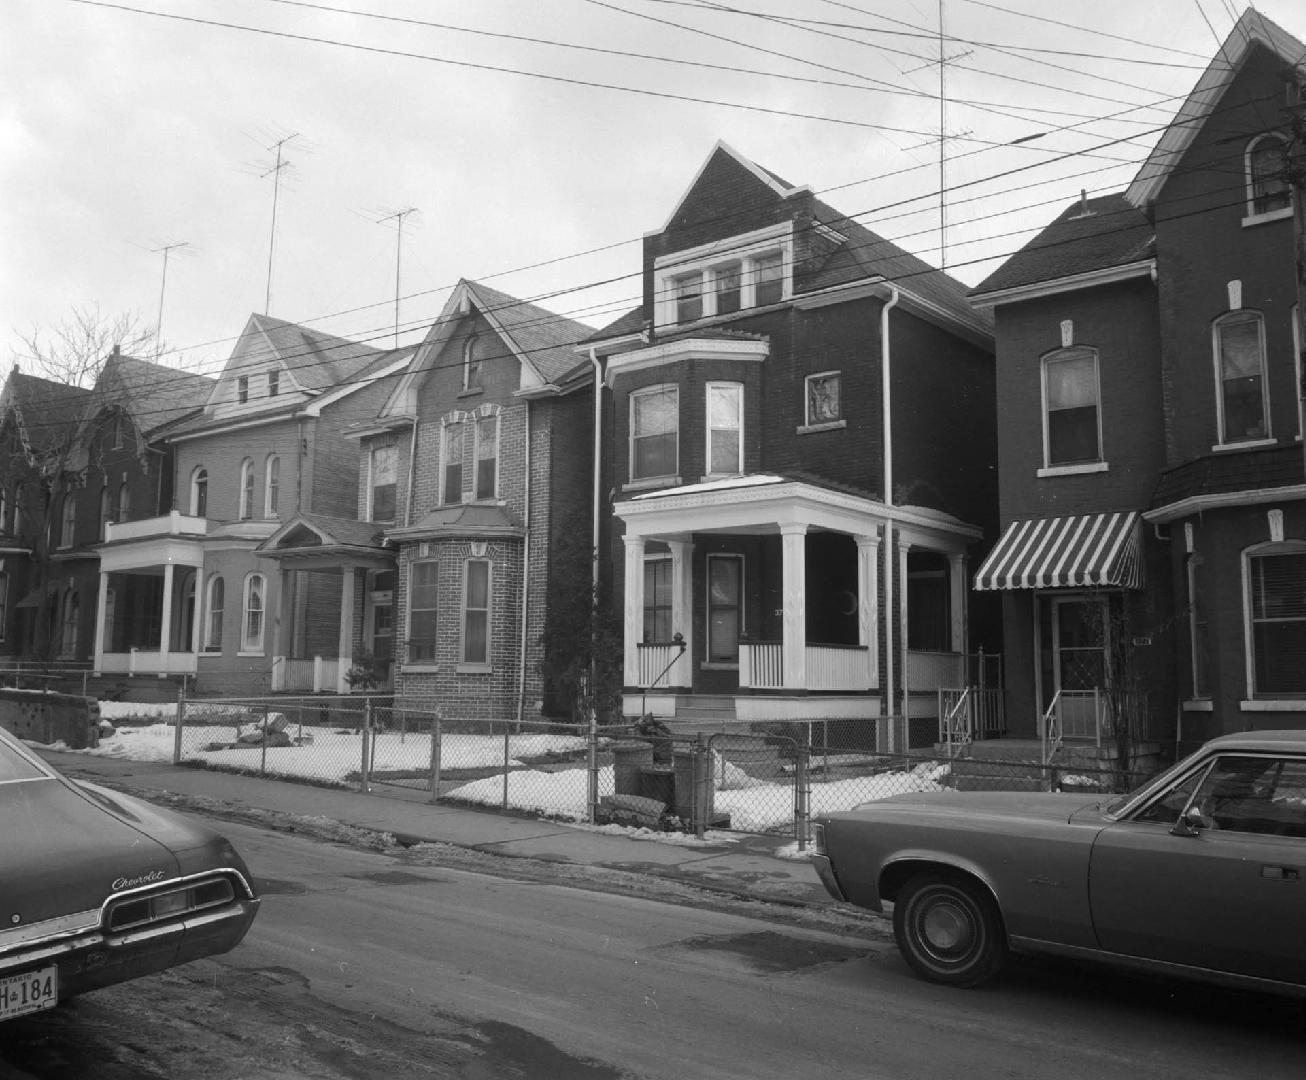 Berkeley St. east side, looking northeast, between Gerrard Street East and Carlton St., Toronto, Ontario